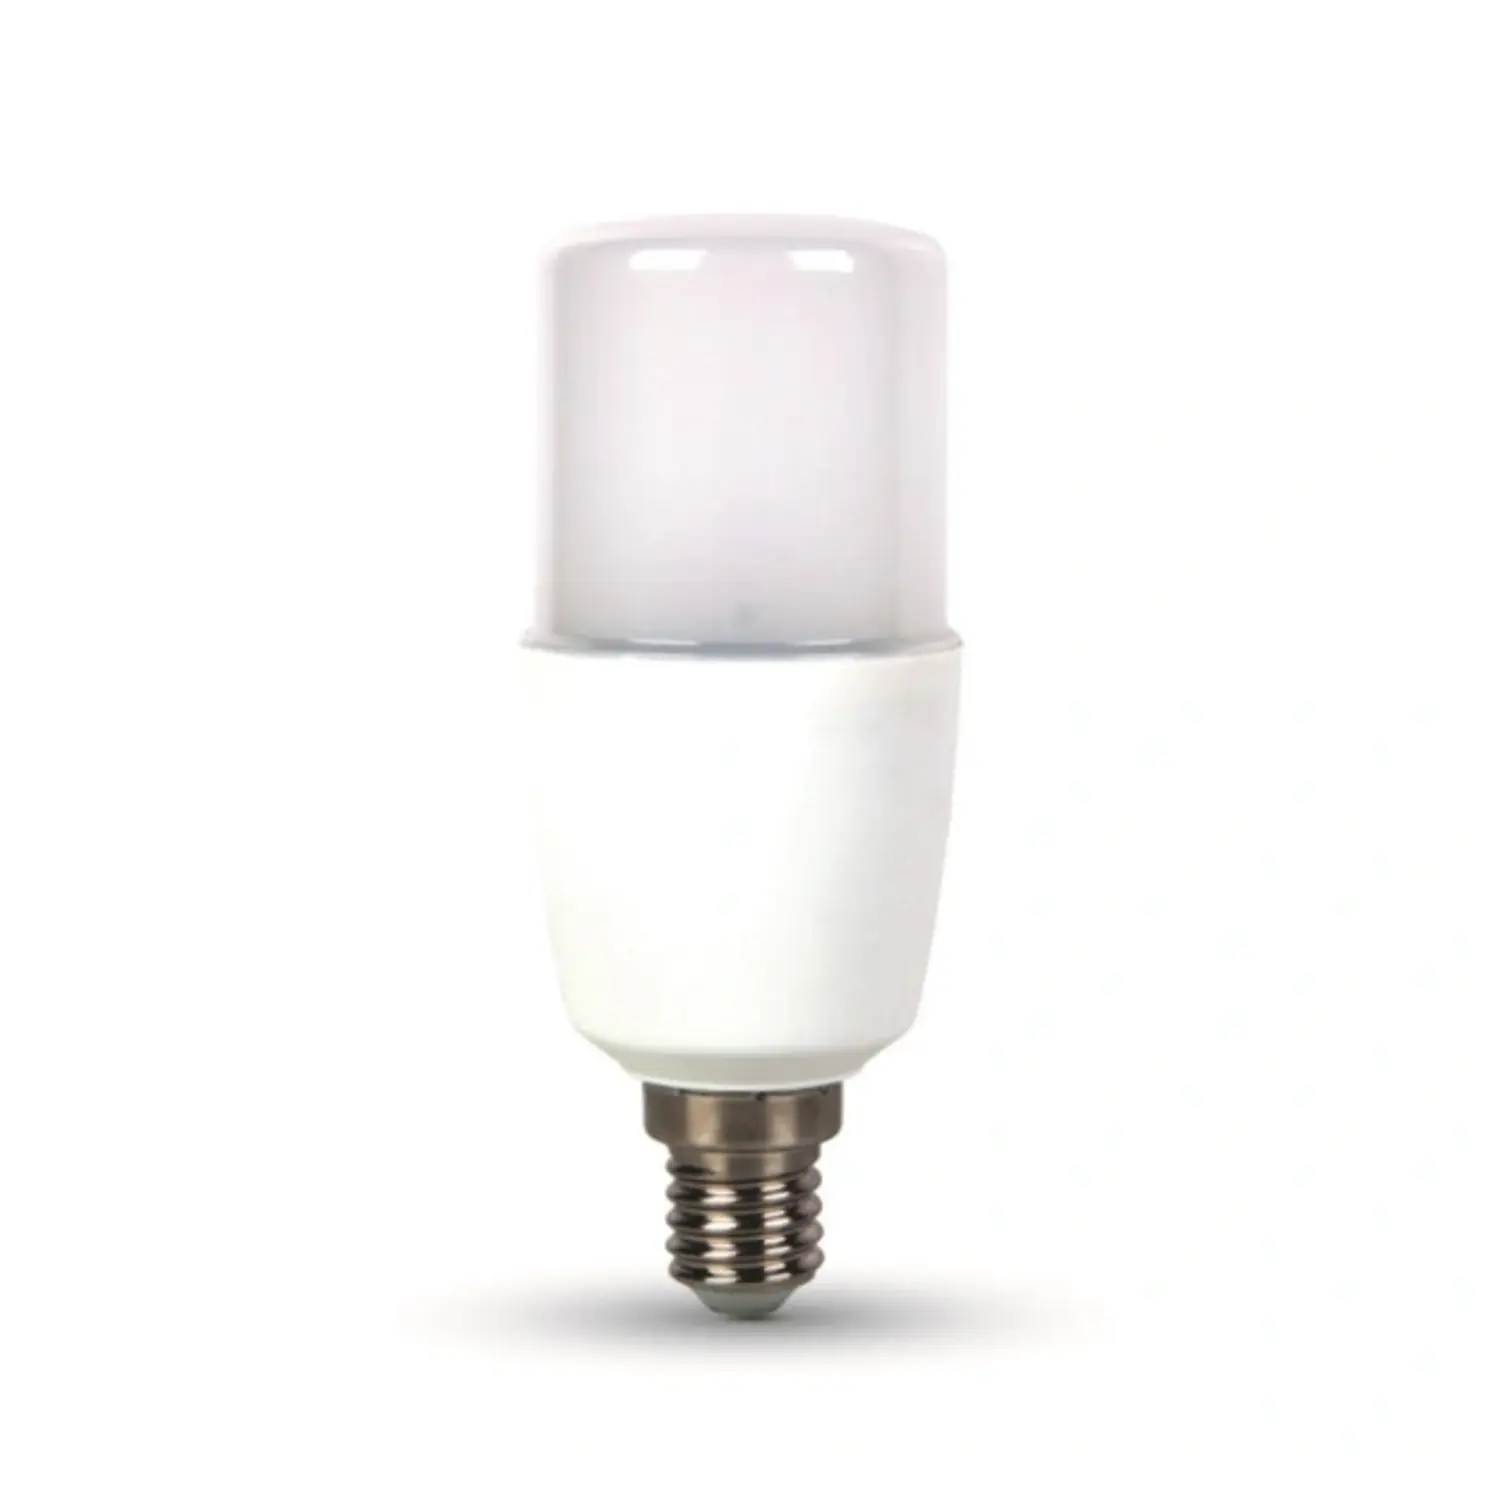 immagine del prodotto lampadina led t37 e14 9 watt bianco caldo